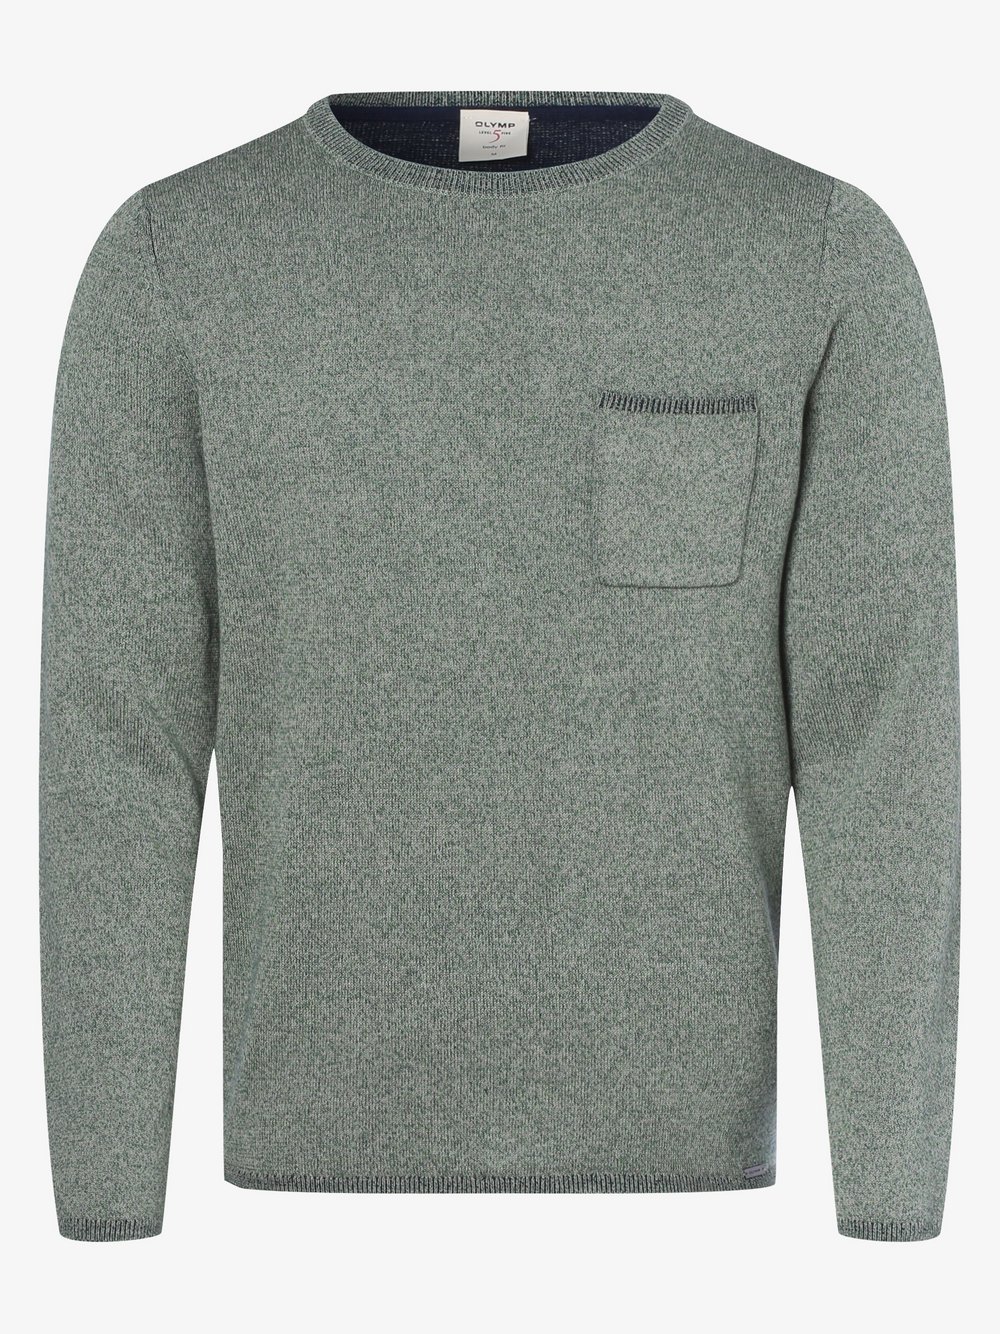 Olymp Level Five - Sweter męski z dodatkiem lnu, zielony